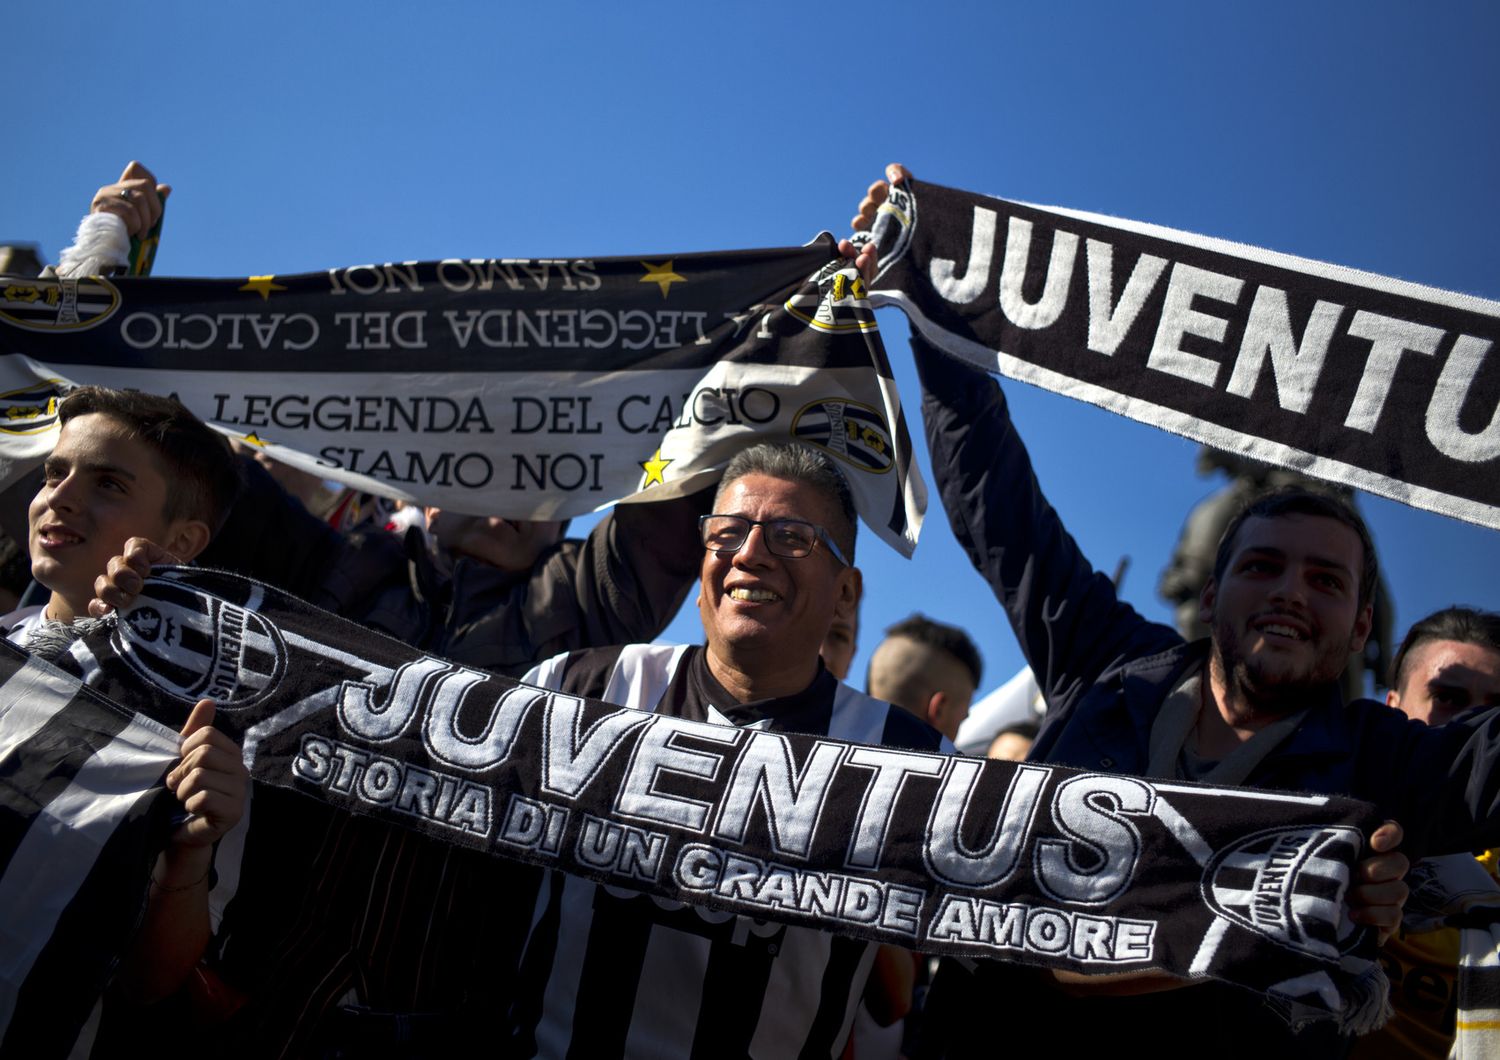 Tifosi della Juventus festeggiano la vittoria del quinto scudetto consecutivo